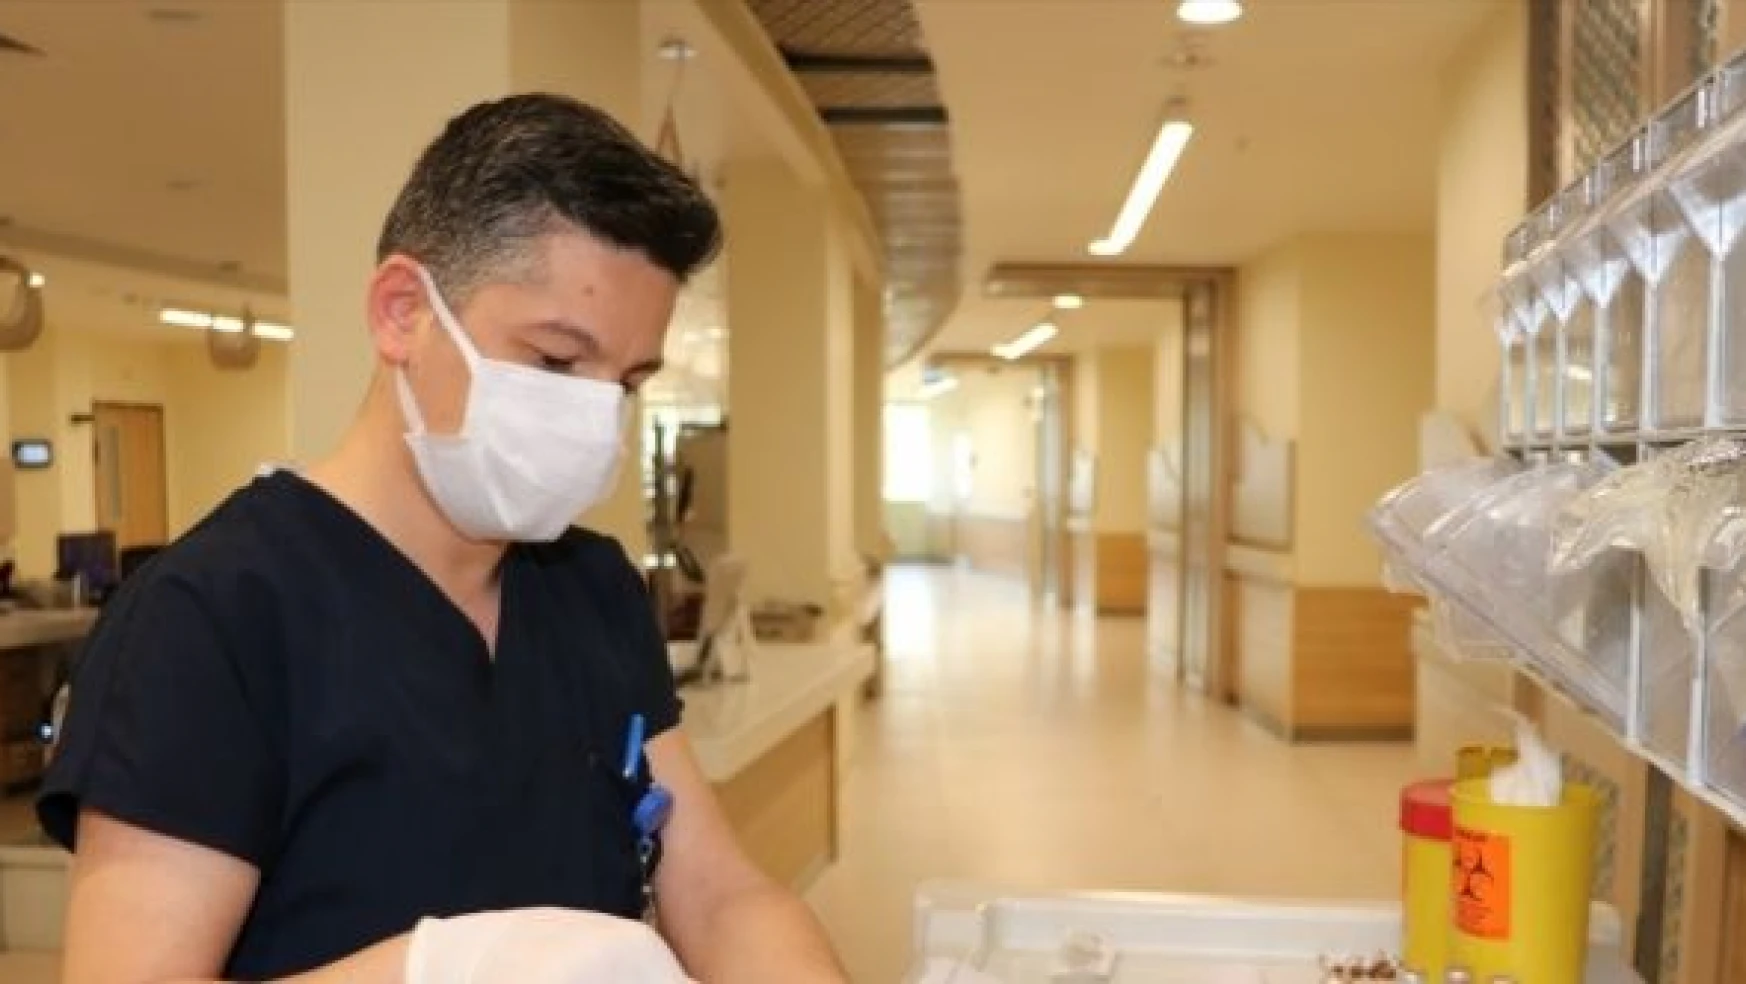 Erzurumlu erkek hemşire güler yüzüyle hastaların gönlünü kazanıyor